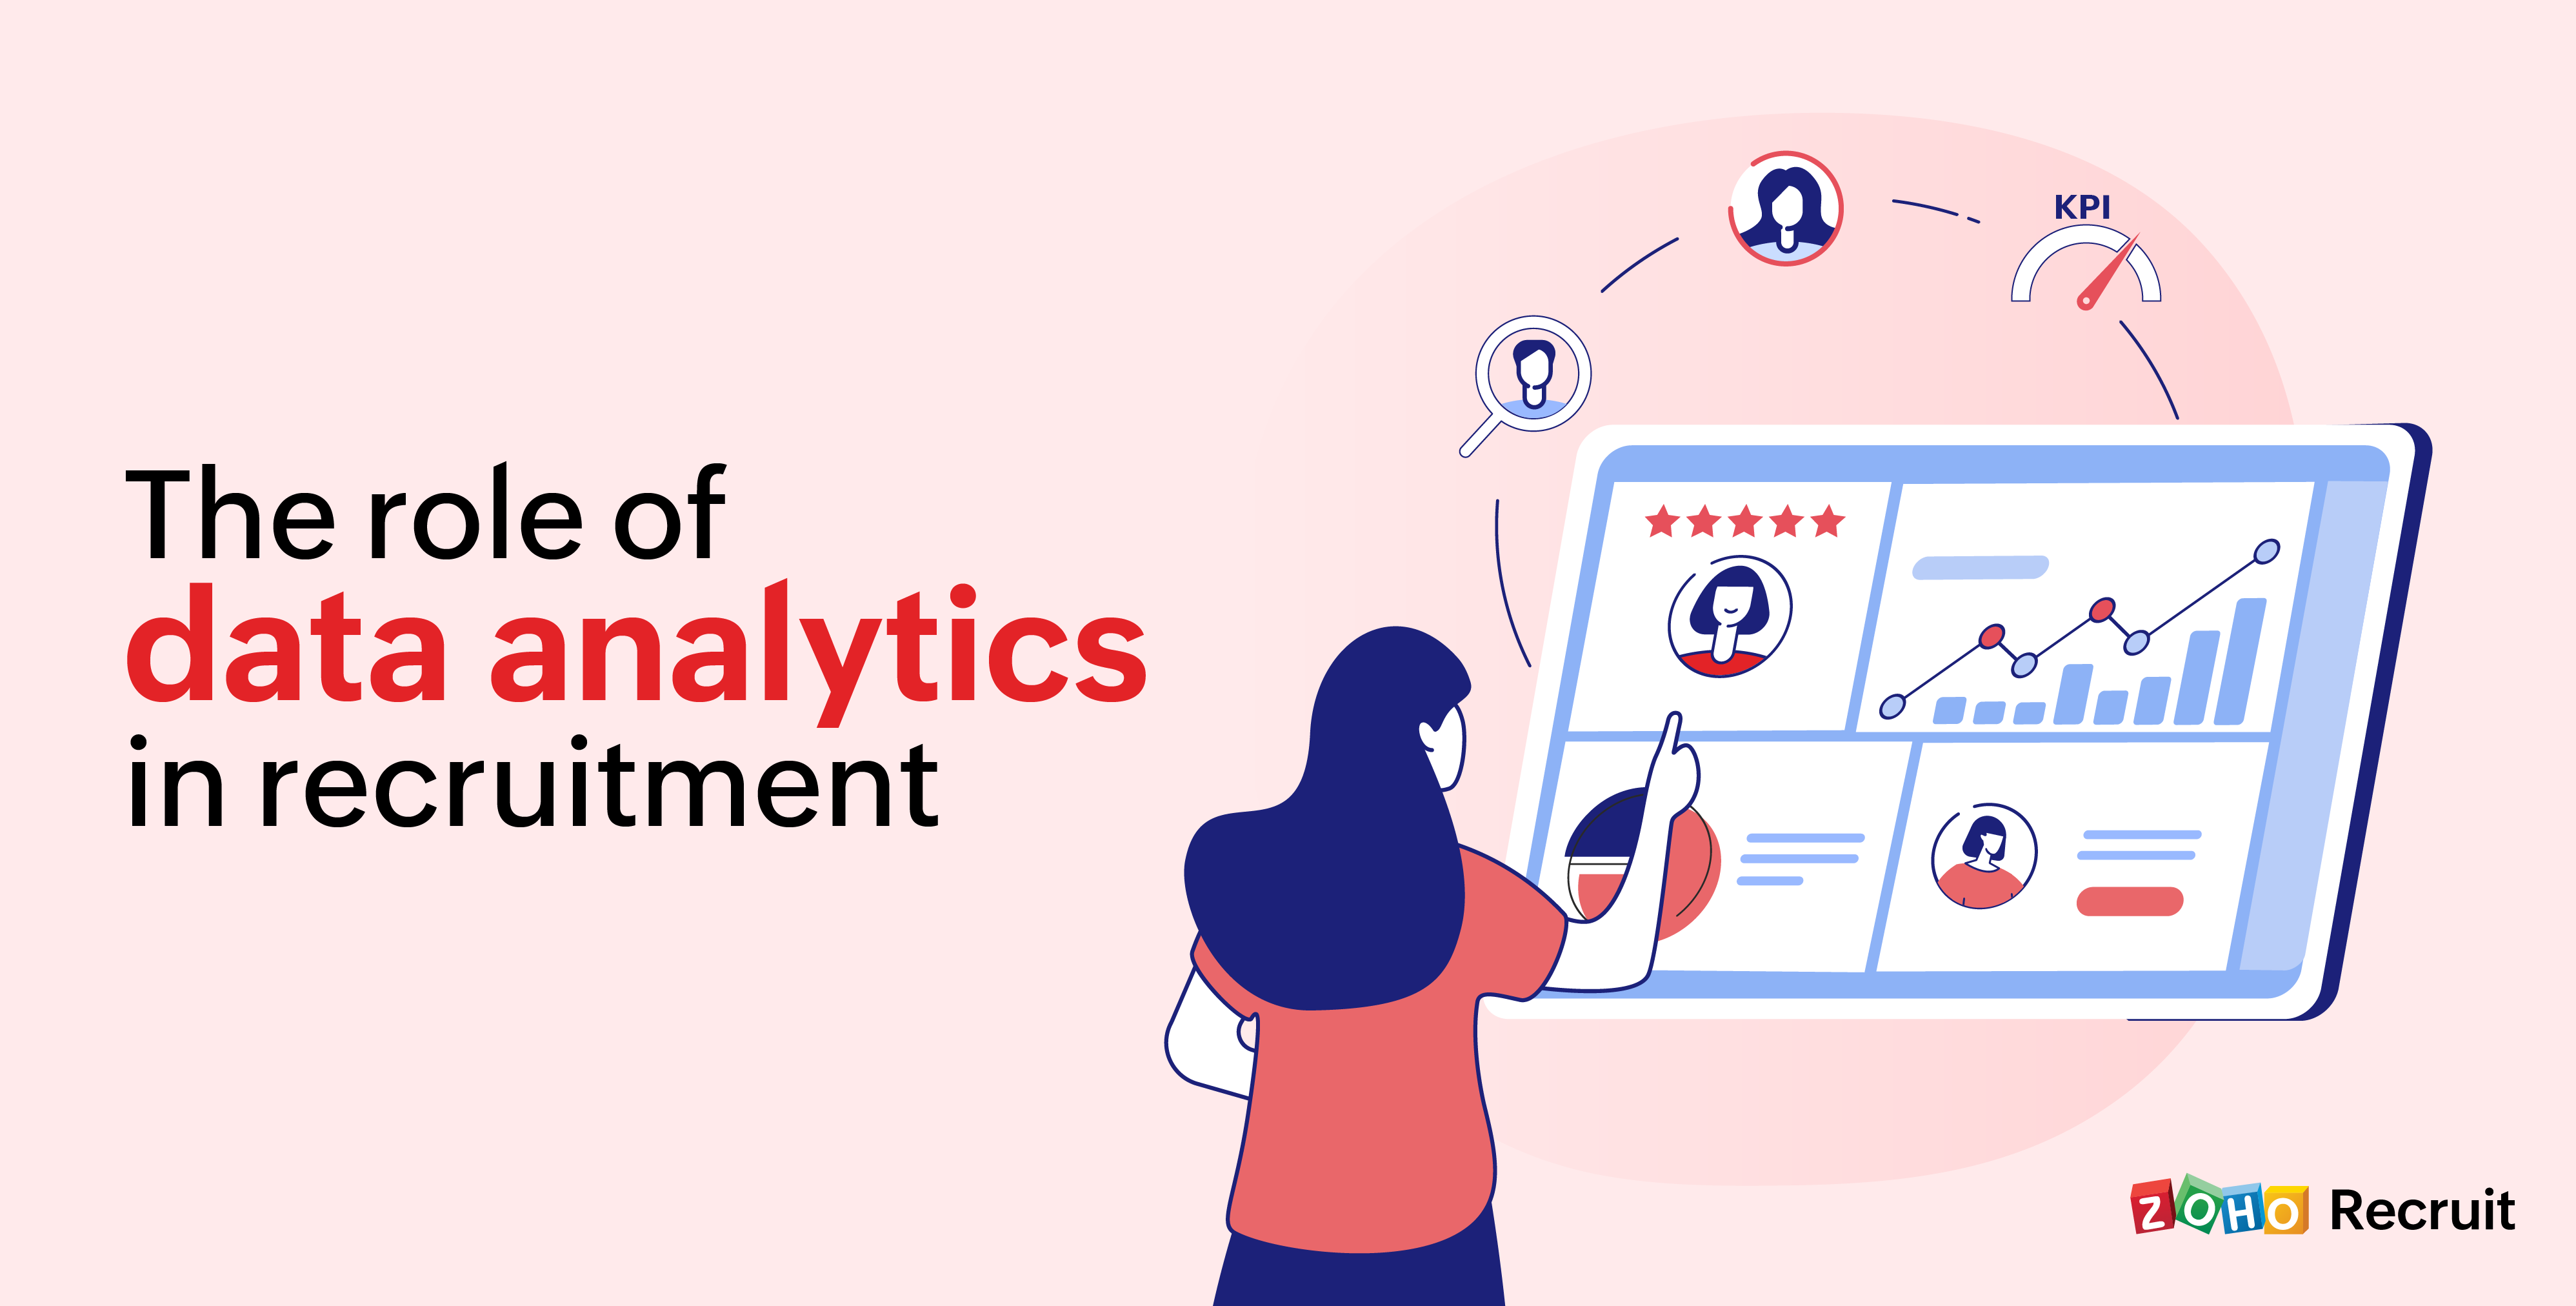 Data analytics in recruitment